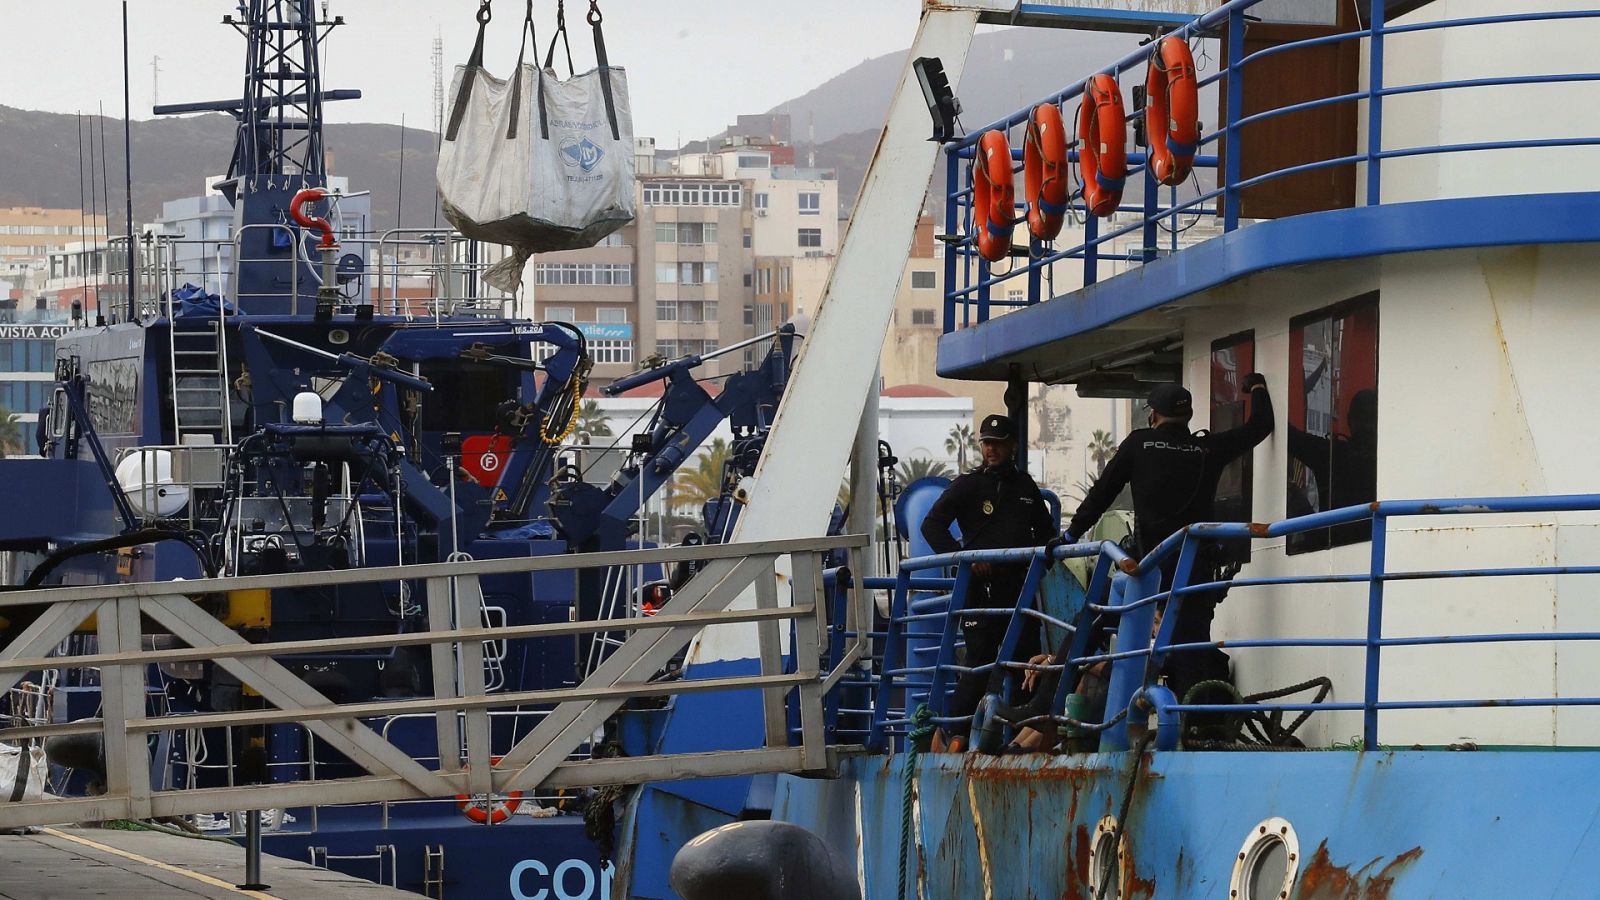 Cinco detenidos en un pesquero con 2.900 kilos de cocaína al sur de Canarias